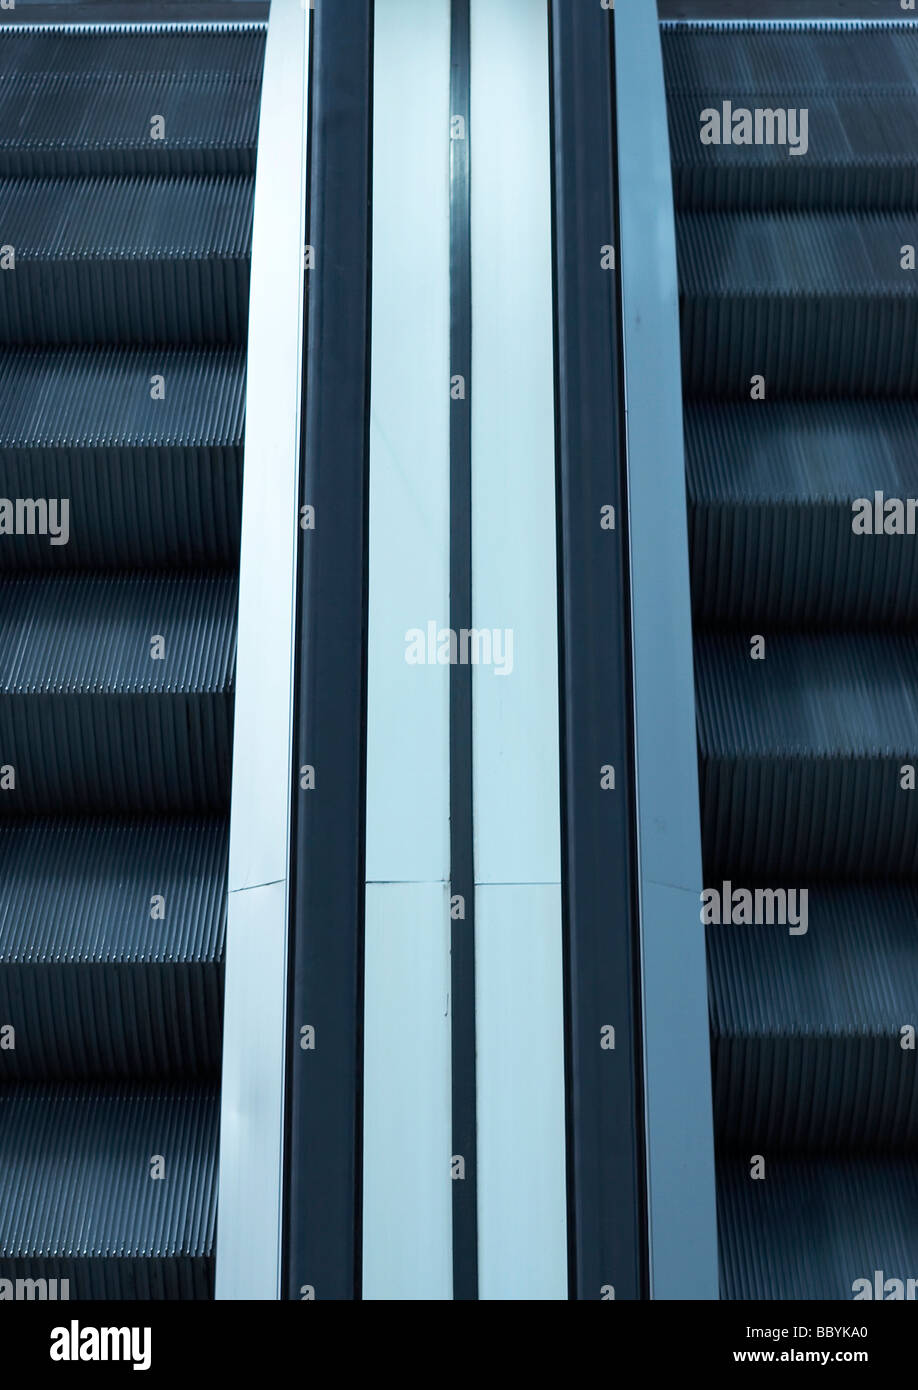 Résumé image semi-regardant vers le bas sur un escalator Banque D'Images